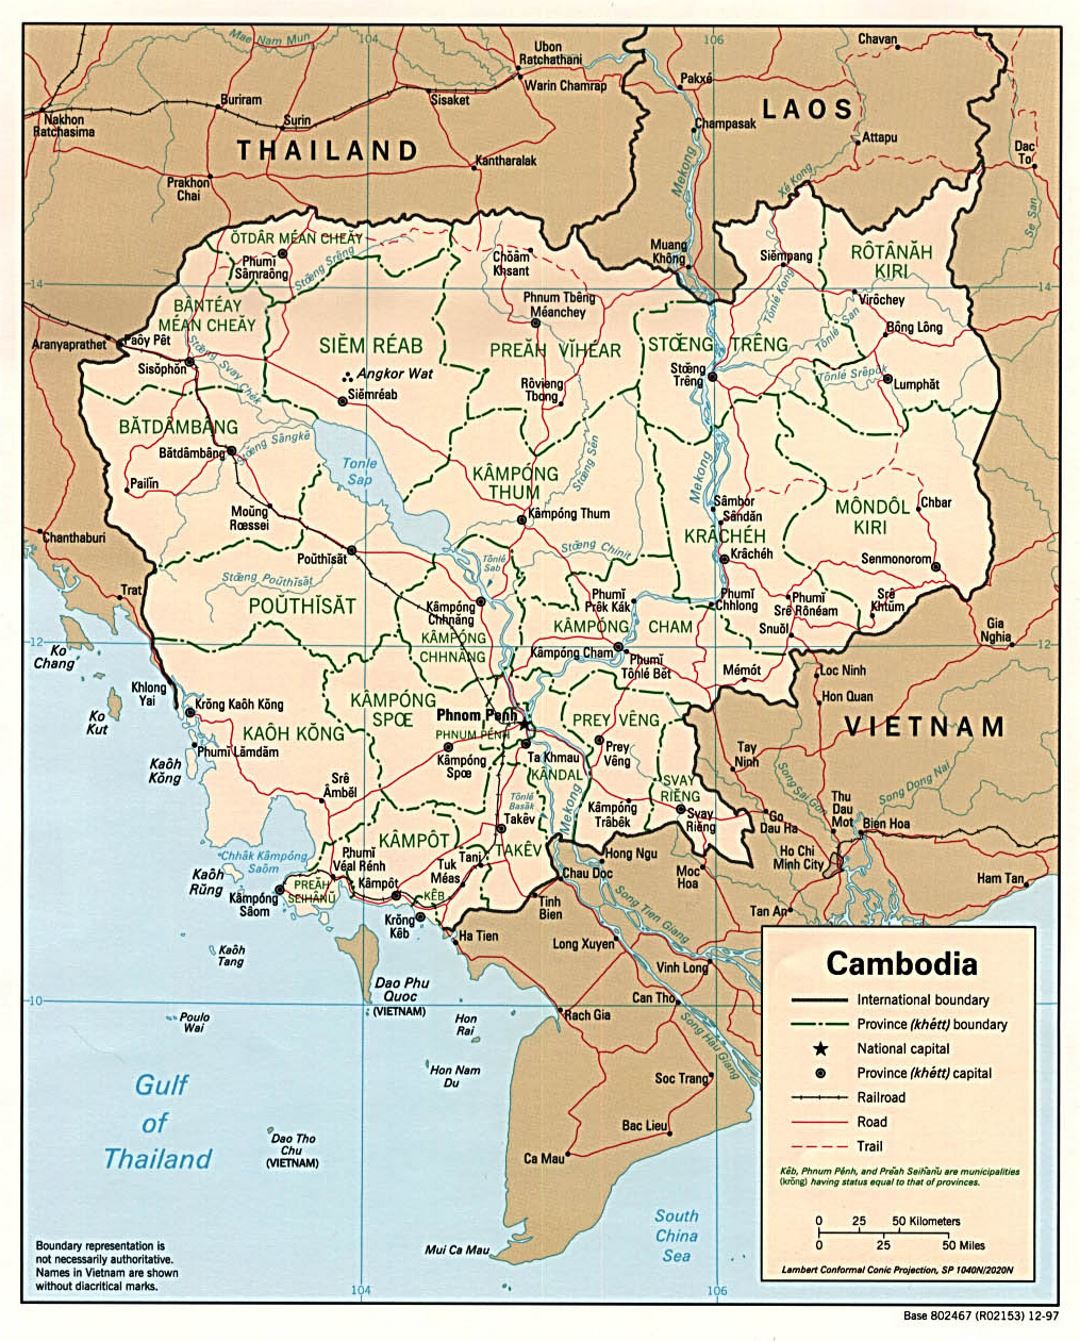 Detallado mapa político y administrativo de Camboya con carreteras, ferrocarriles y principales ciudades - 1997